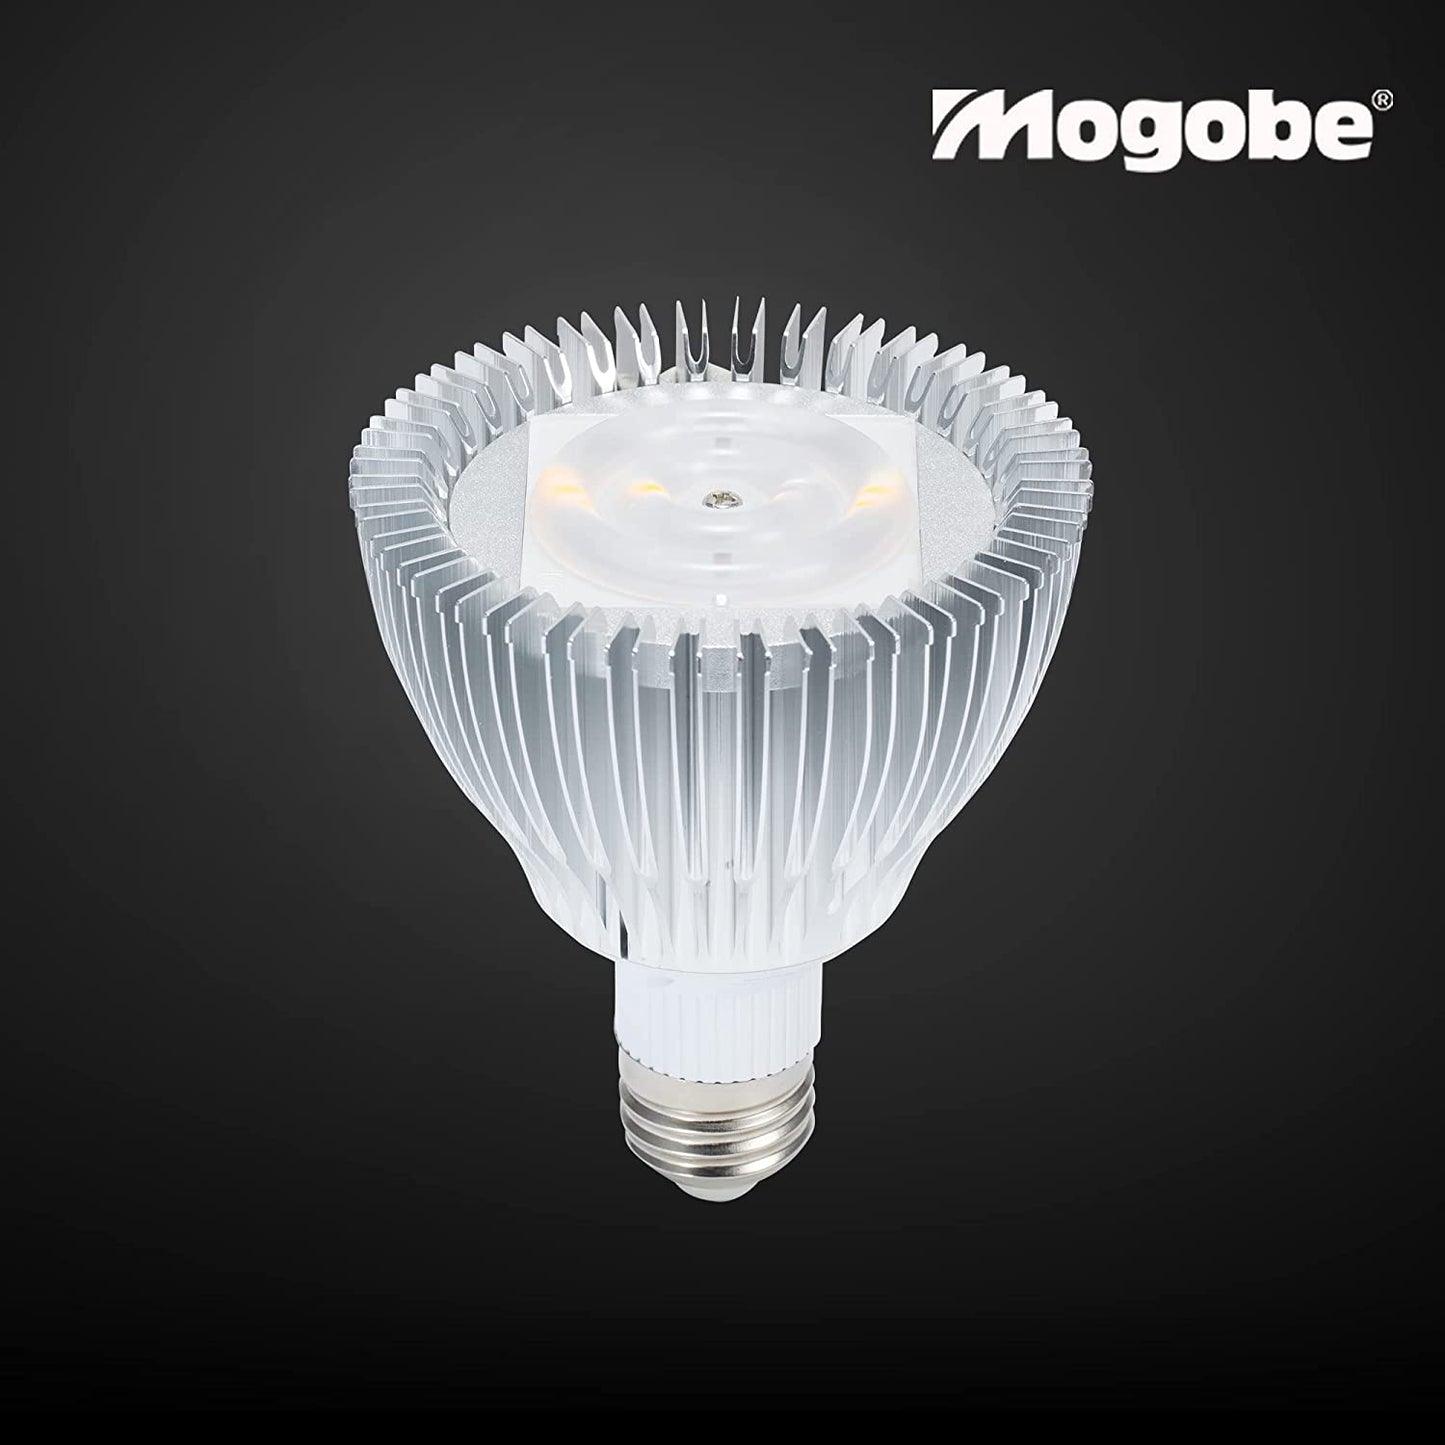 60° of optical lens  in mogobe 20w grow light bulb